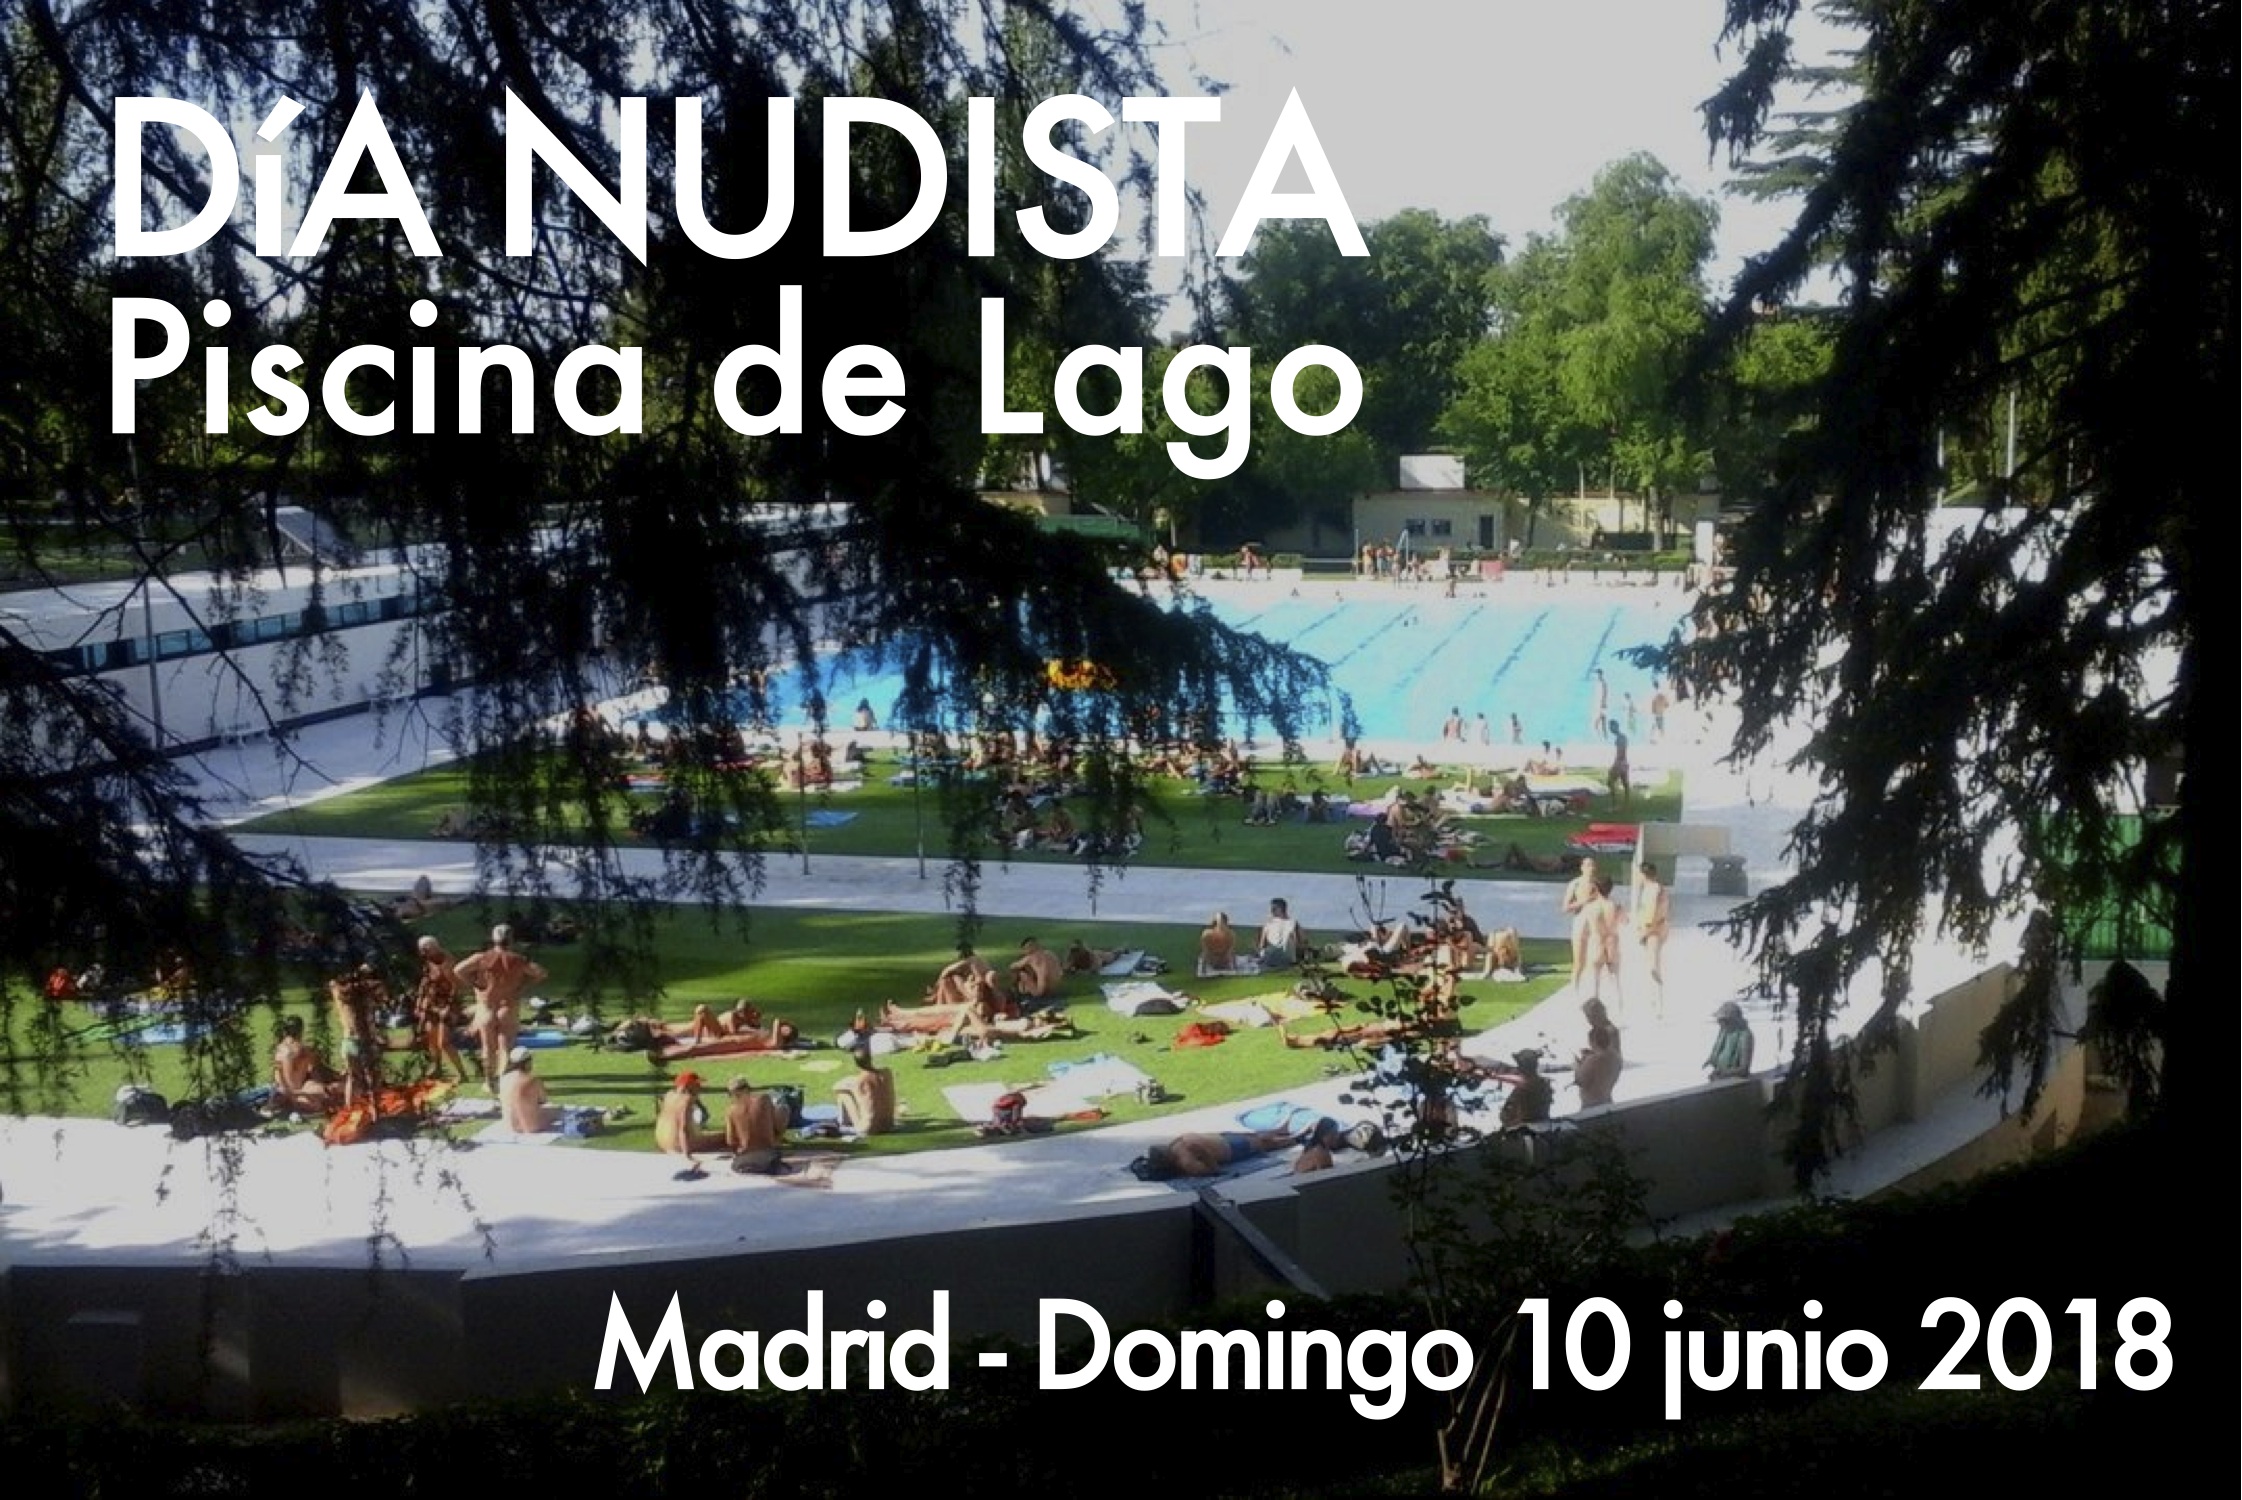 Día mundial del Naturismo el 10 de junio 2018 en la piscina de Lago, Madrid